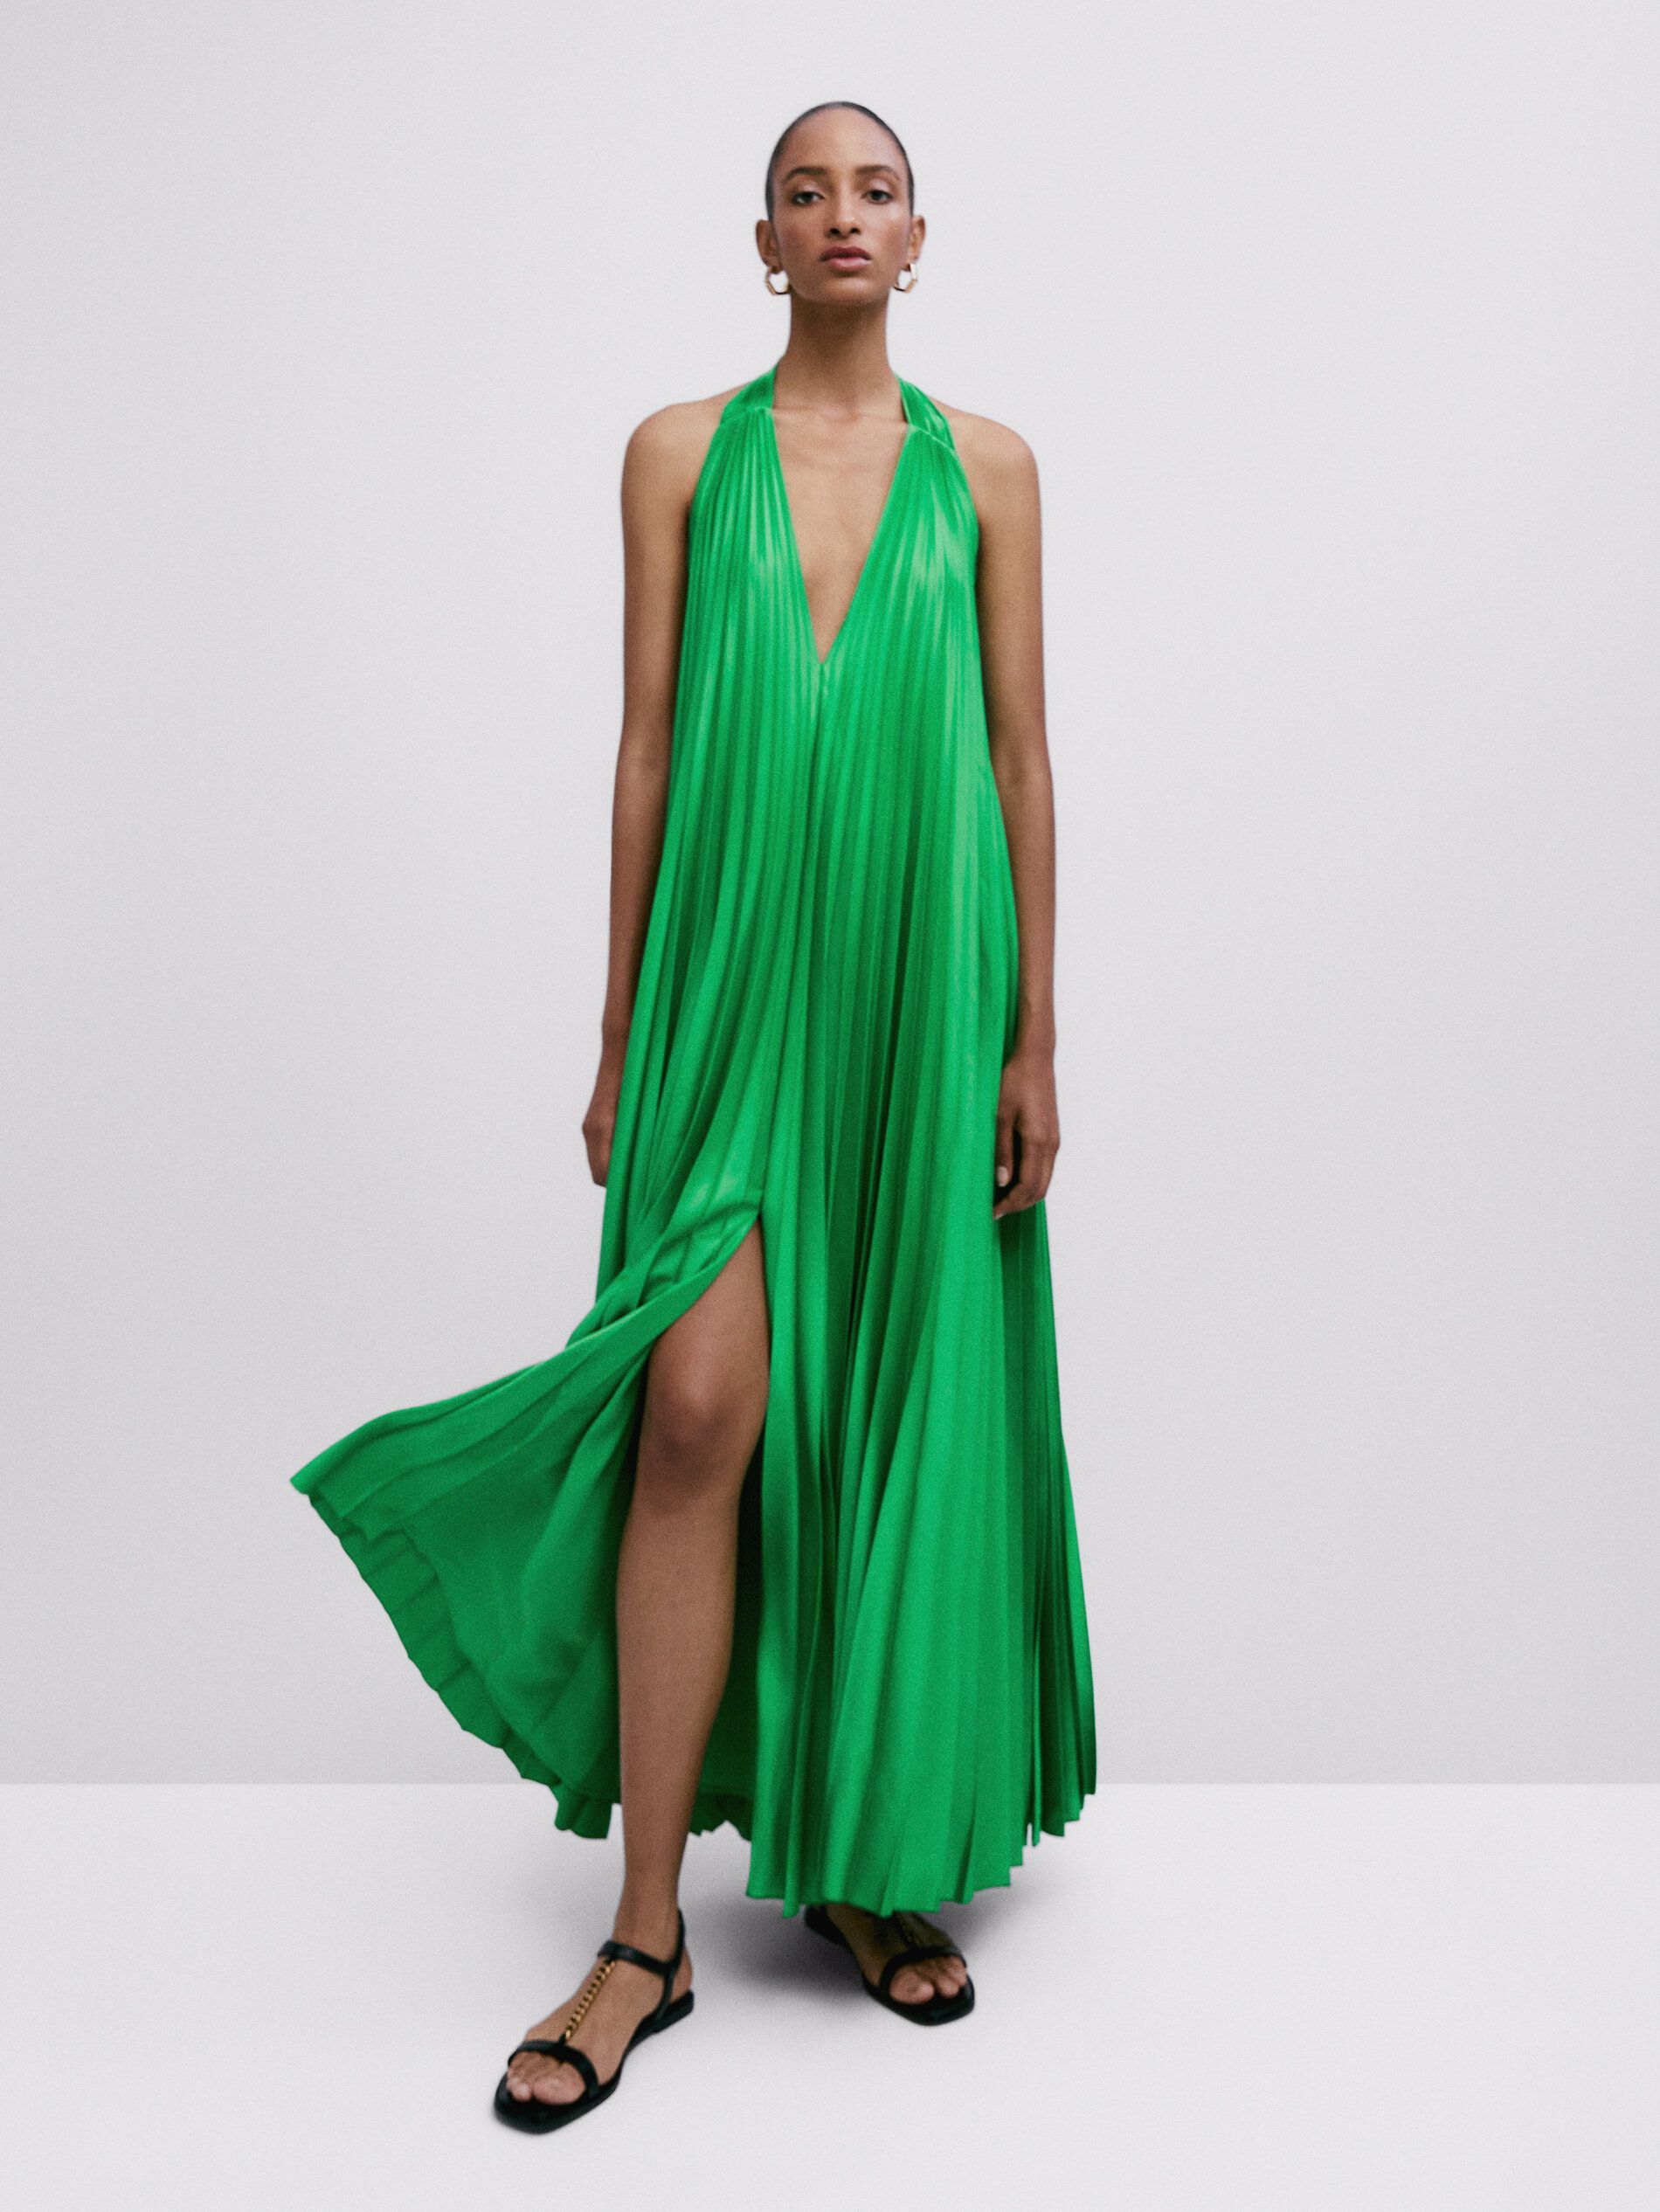 El vestidazo verde que salvará tu look de invitada de boda